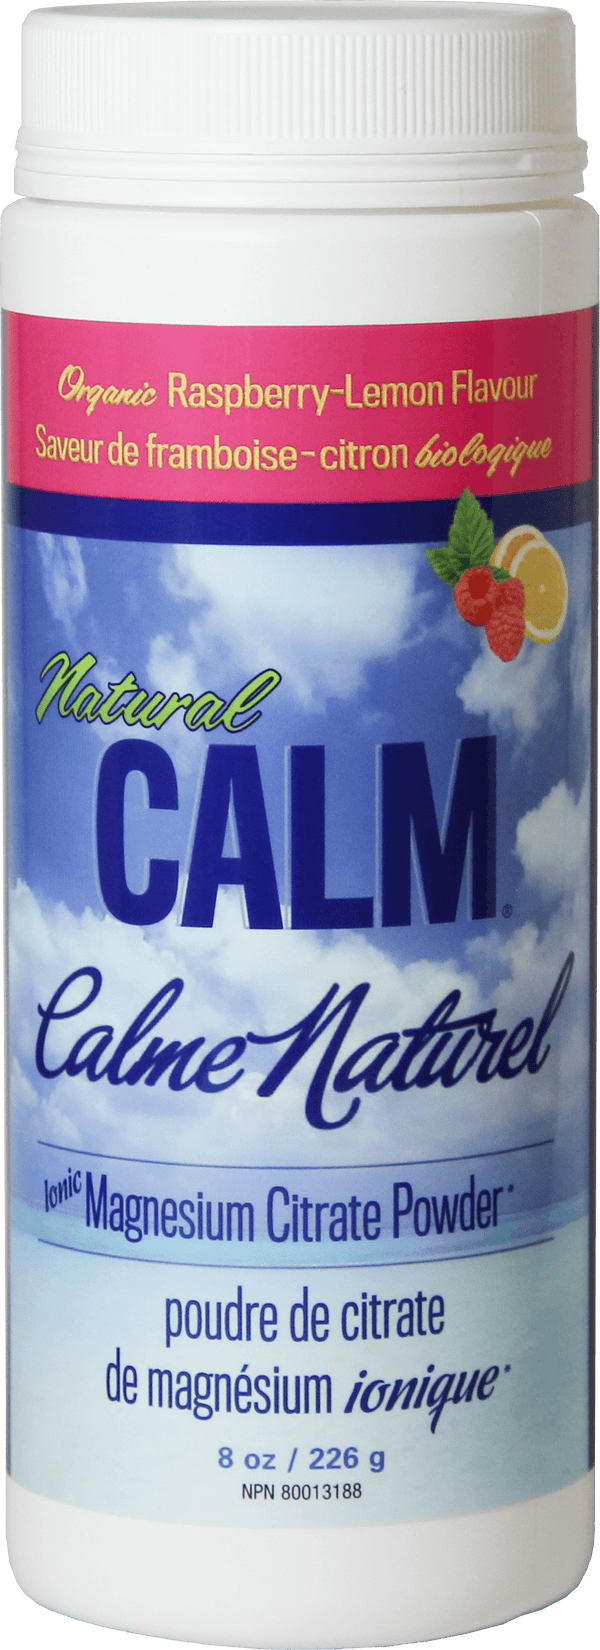 Natural Calm Natural Calm، توت العليق والليمون، 226 جم